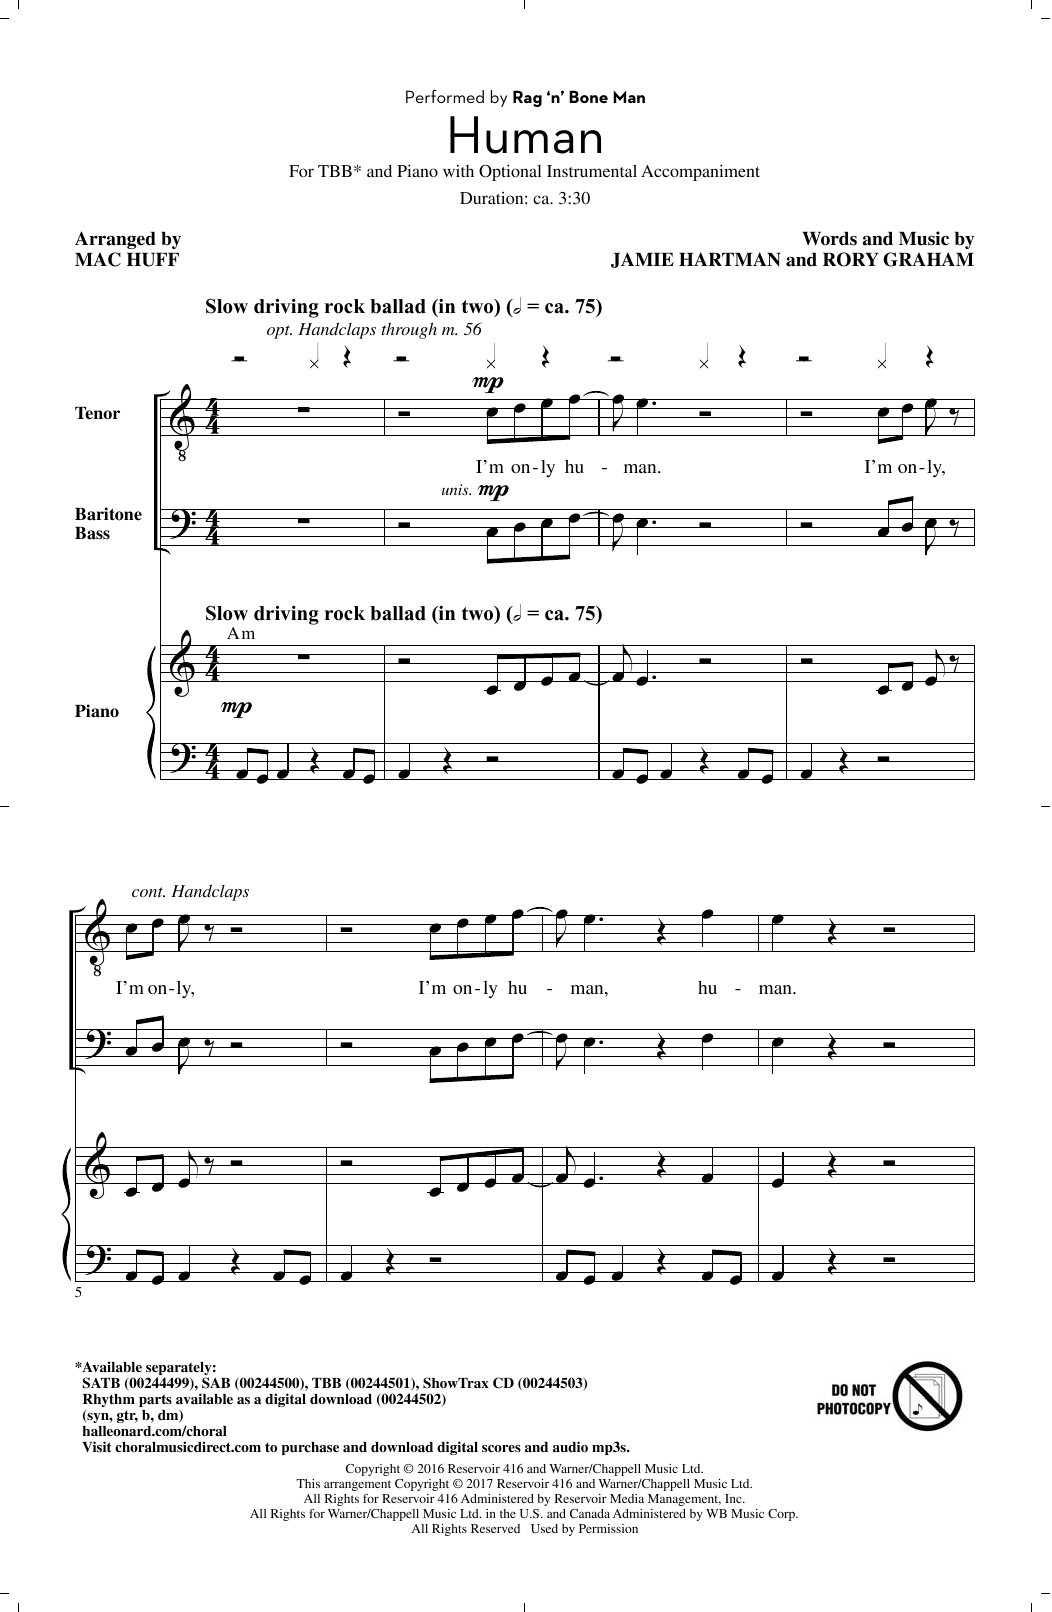 Rag'n'Bone Man Human (arr. Mac Huff) sheet music notes and chords arranged for SAB Choir